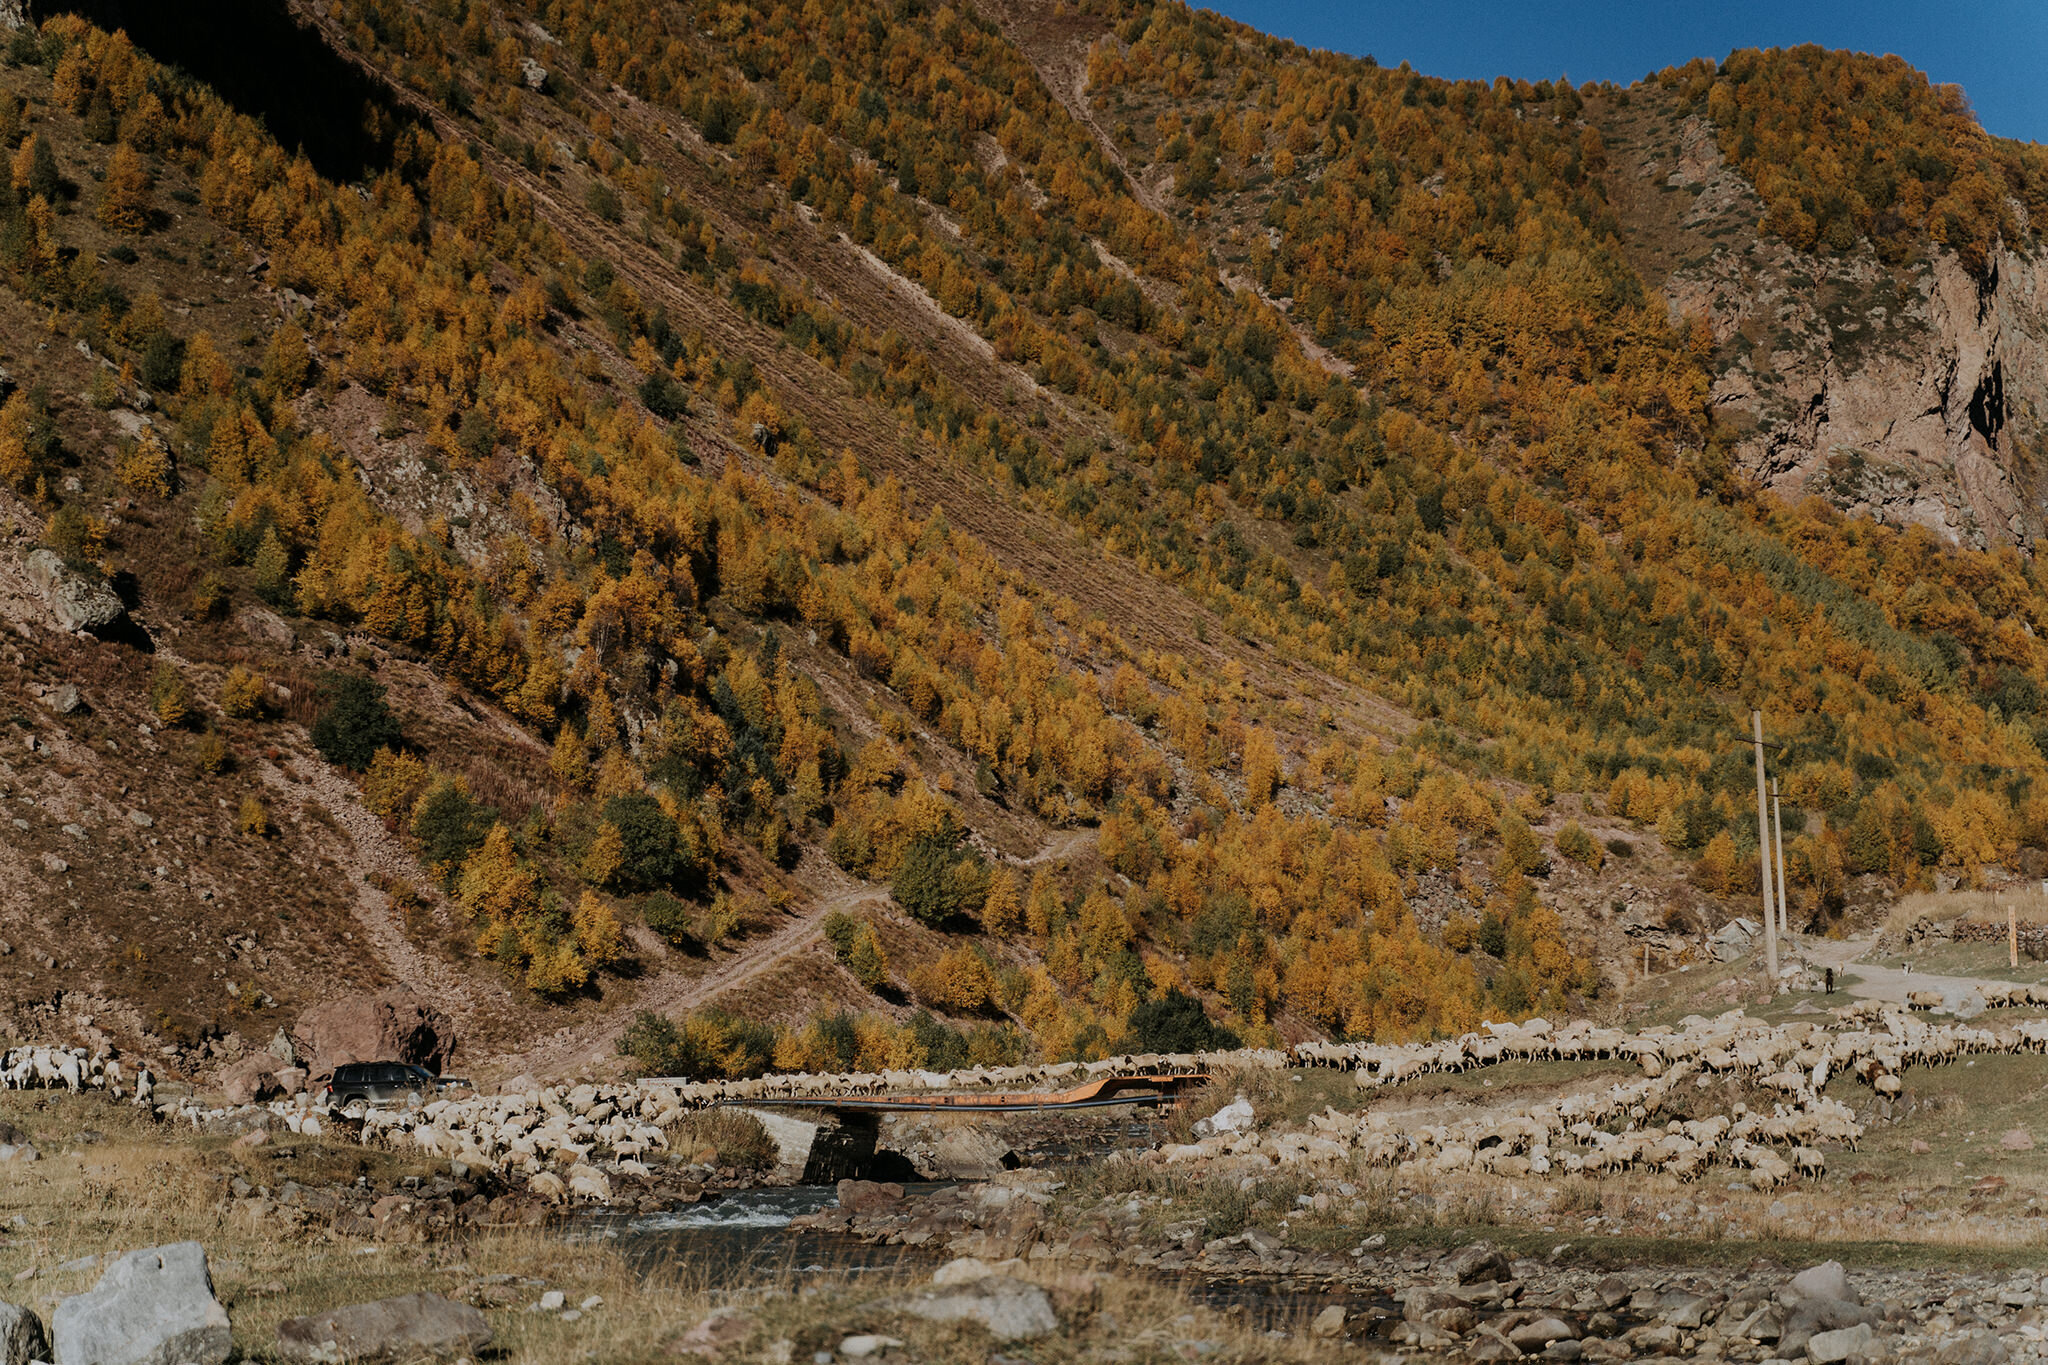  Truso Valley, nơi khởi nguồn của dòng sông Terek vốn tồn tại nhiều huyền thoại và điểm đặc biệt. Nhiều năm trước vì mâu thuẫn sắc tộc giữa người Ossetia và Georgia, liên bang Xô Viết đã đóng cửa biên giới khiến phần lớn thung lũng bị bỏ hoang từ nhi